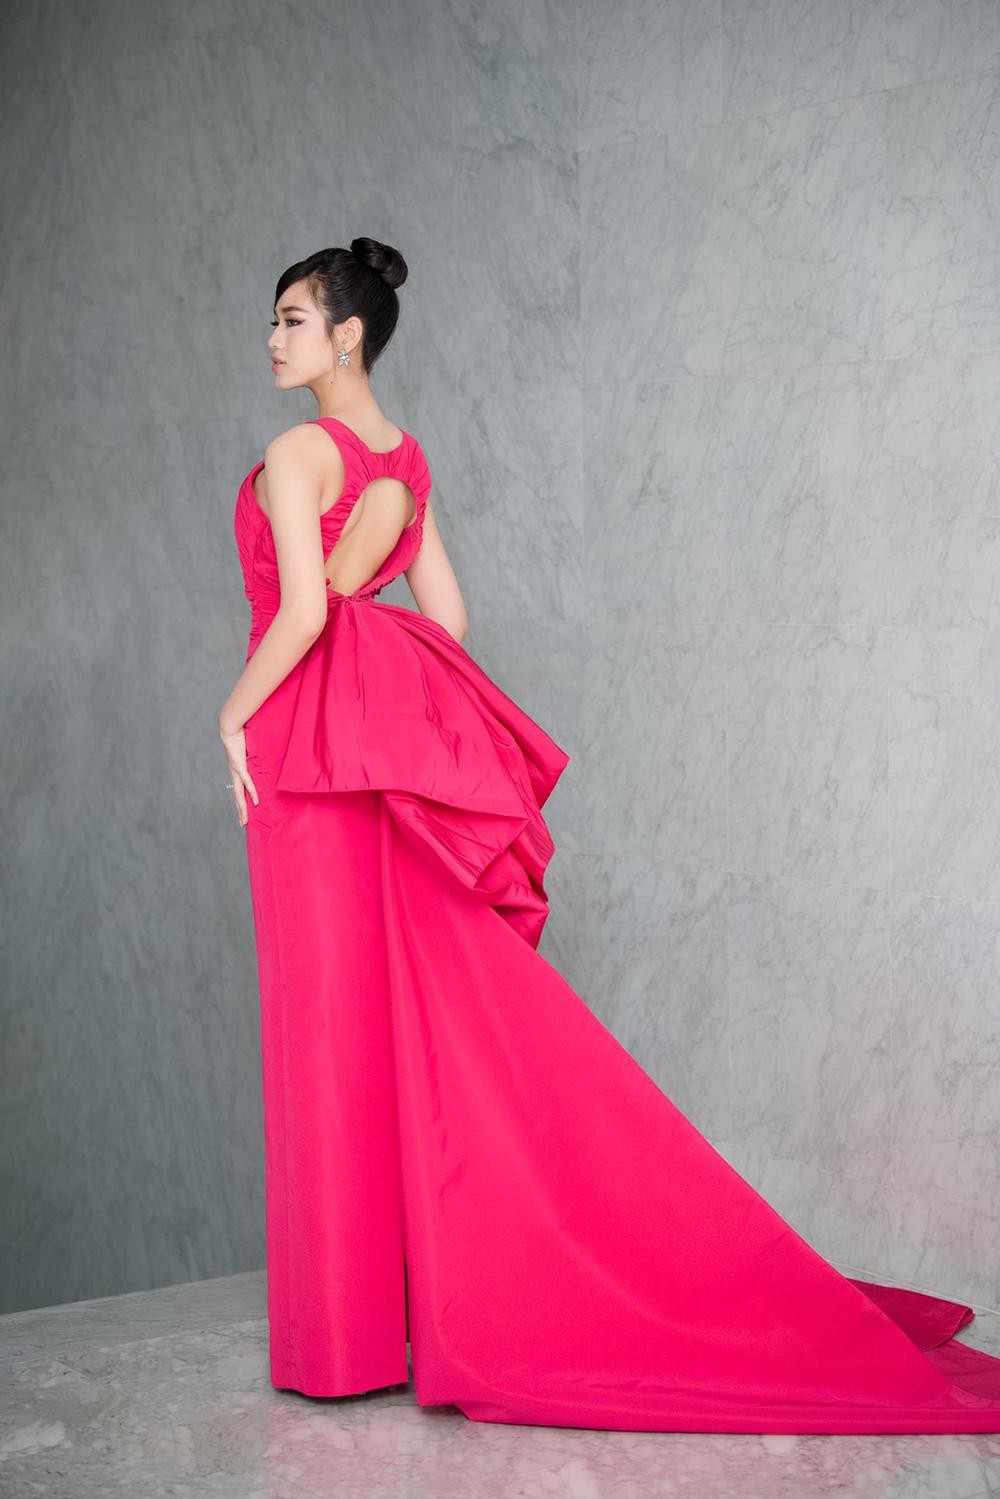 Hoa hậu Đỗ Thị Hà và Lương Thùy Linh nóng bỏng trong trang phục gam màu rực rỡ của nhà thiết kế Công Trí - Ảnh 2.